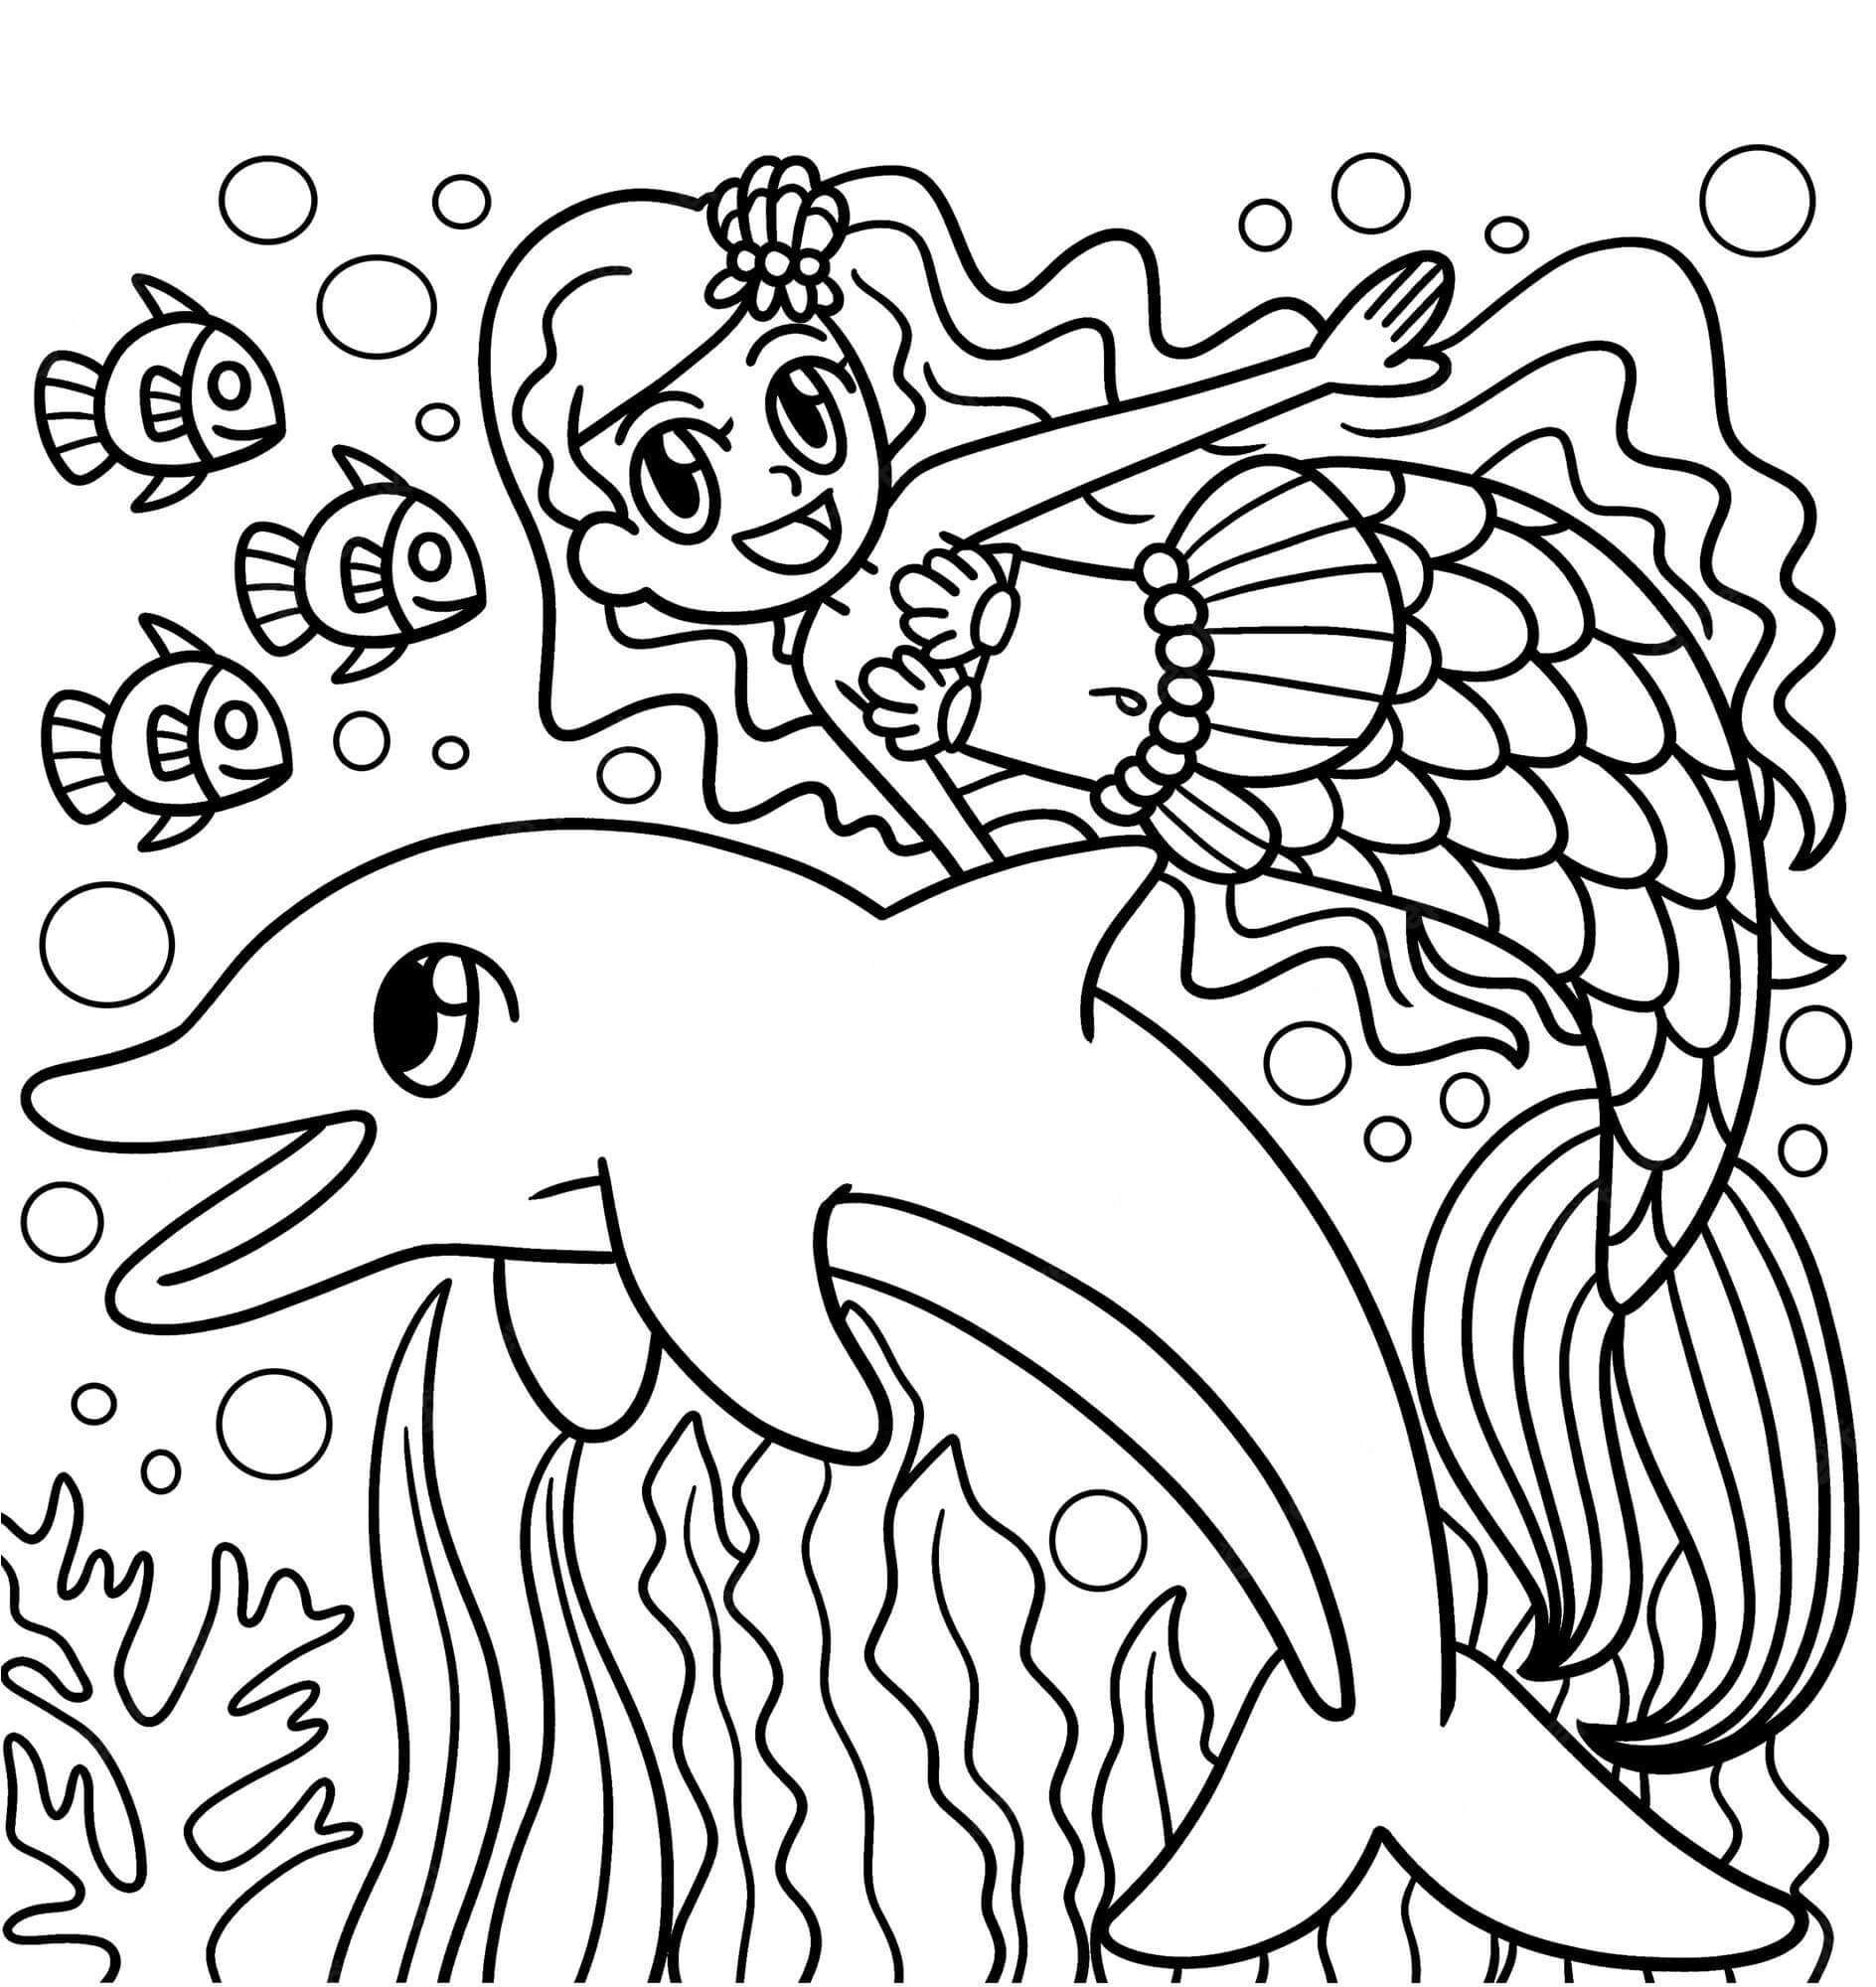 Meerjungfrau mit Delfin und Fisch